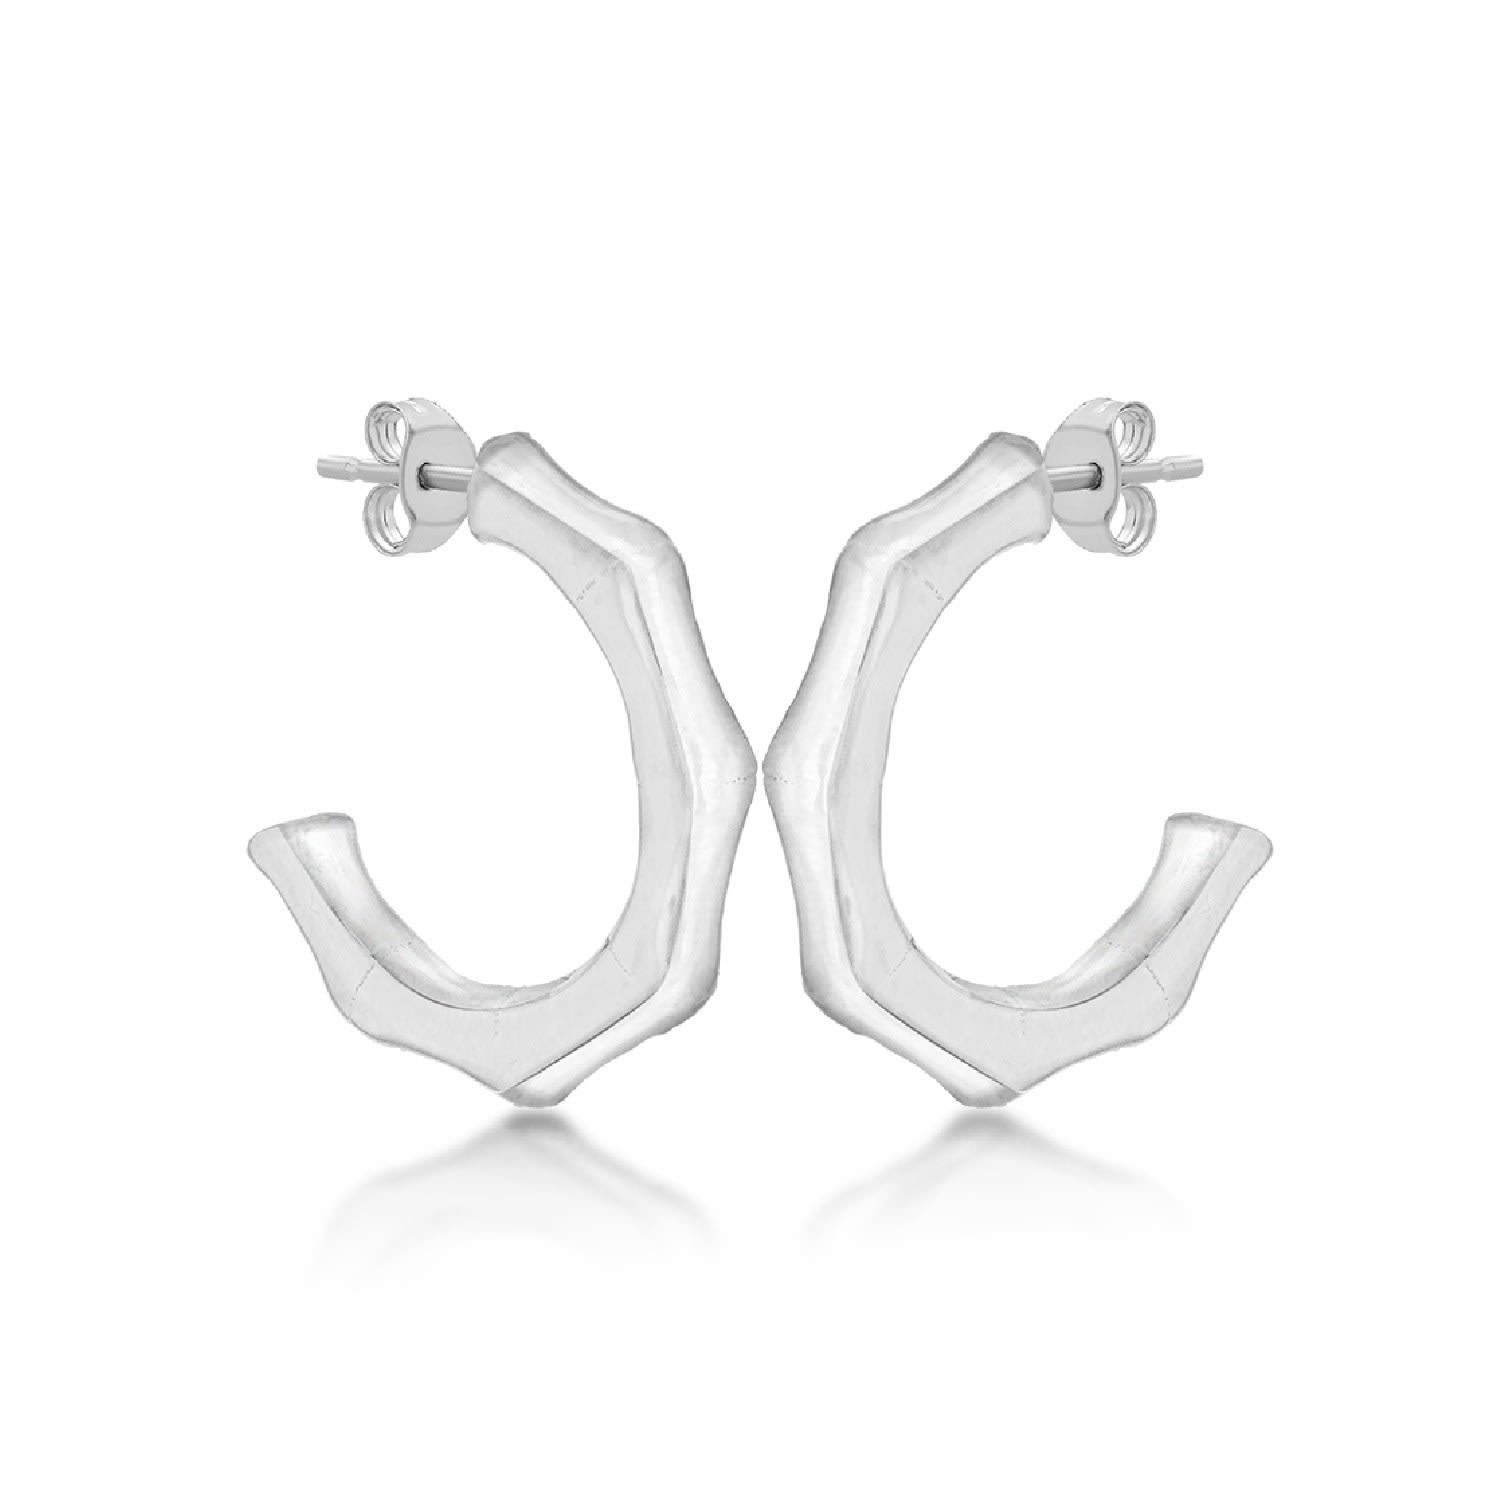 Posh Totty Designs Women's Sterling Silver Bamboo Hoop Earrings